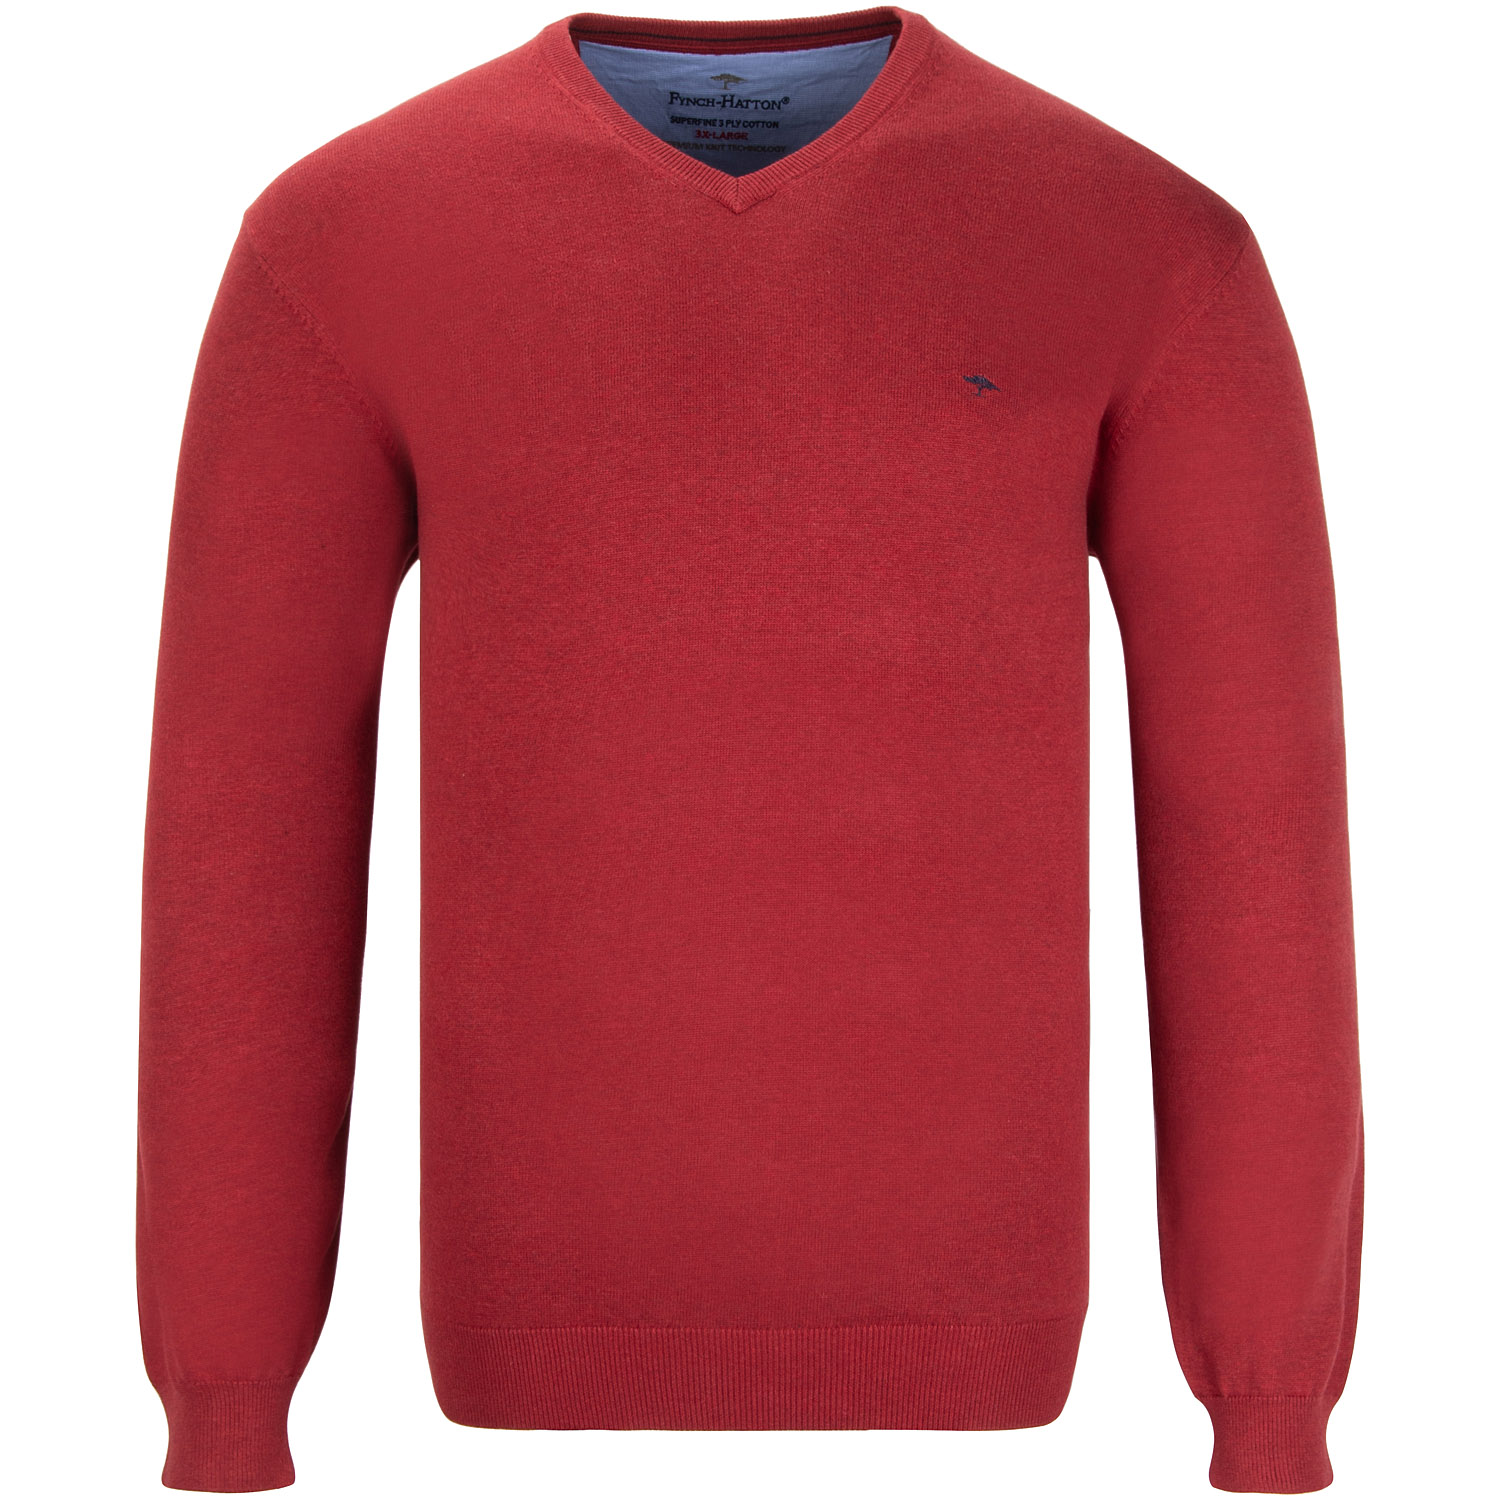 FYNCH HATTON V-Pullover rot Herrenmode kaufen in Übergrößen